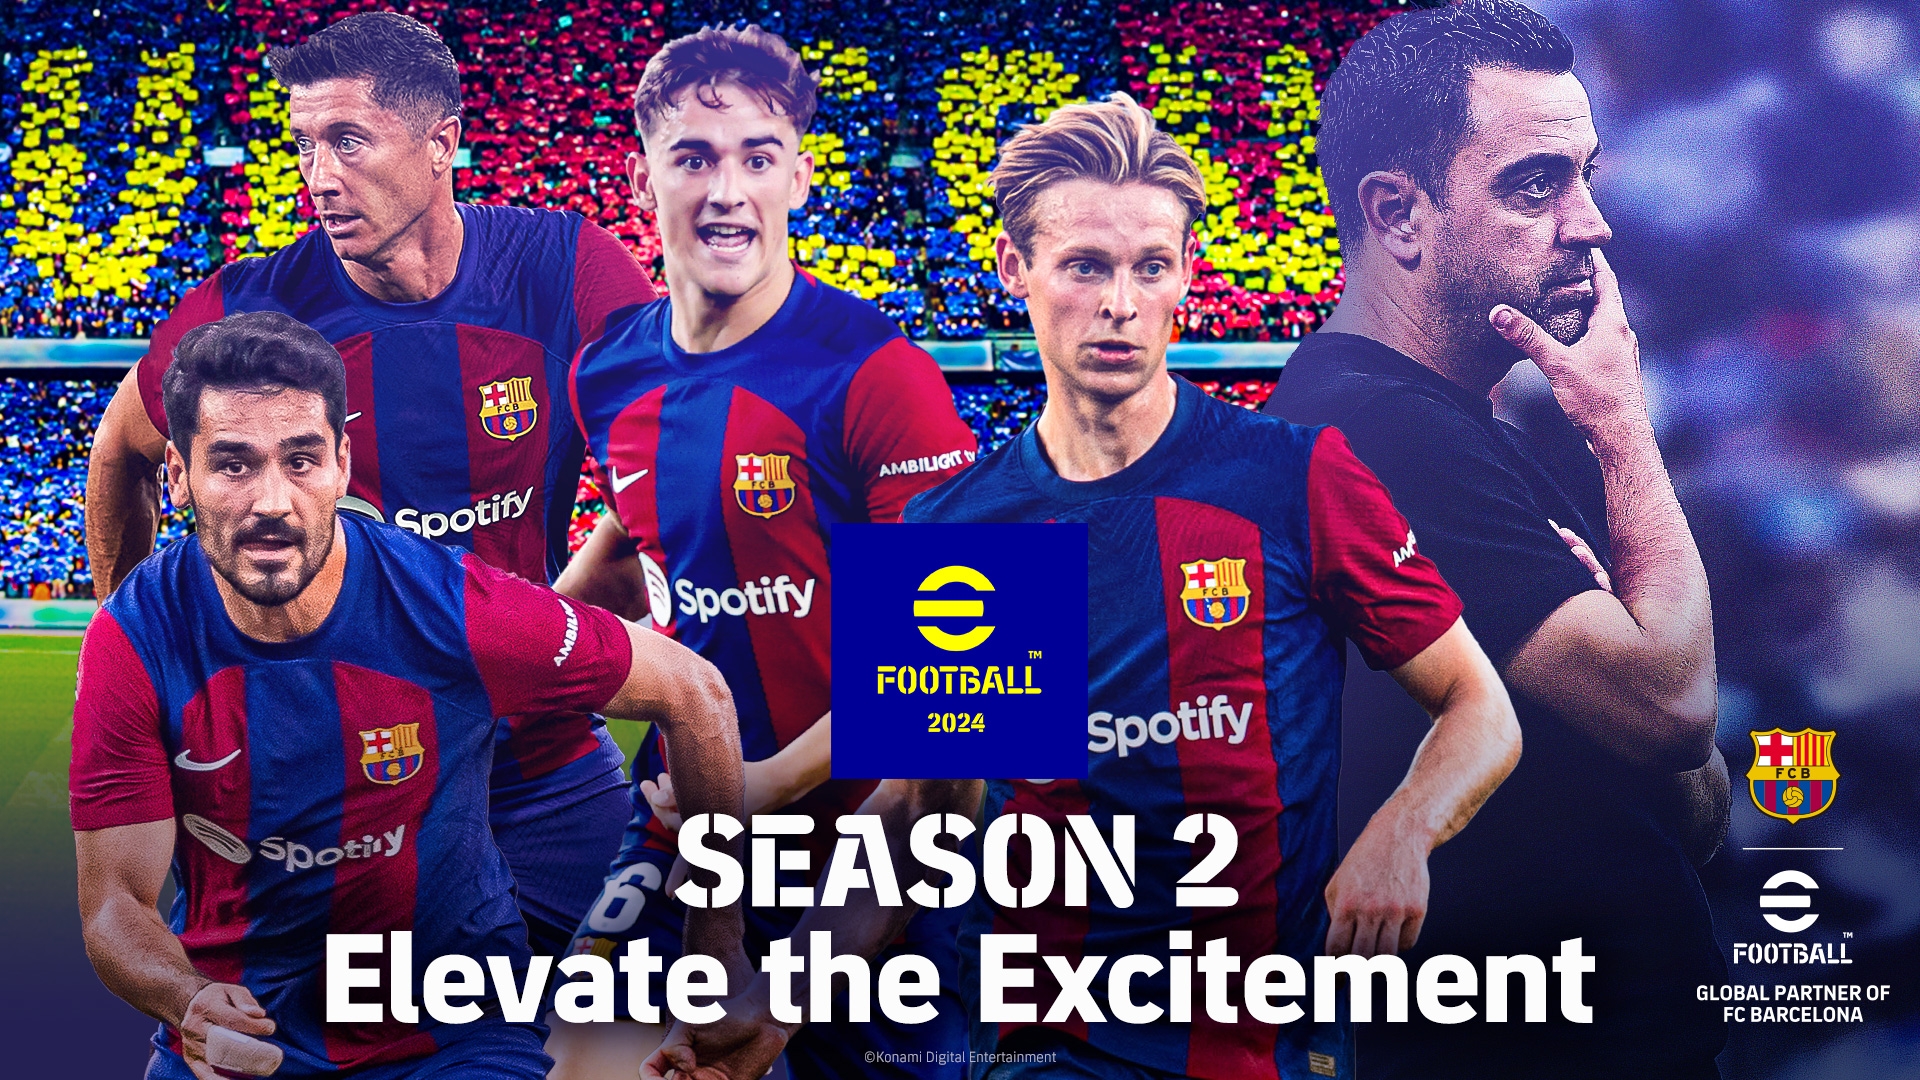 eFootball 2024 inaugura la Season 2: “Elevate the Excitement”